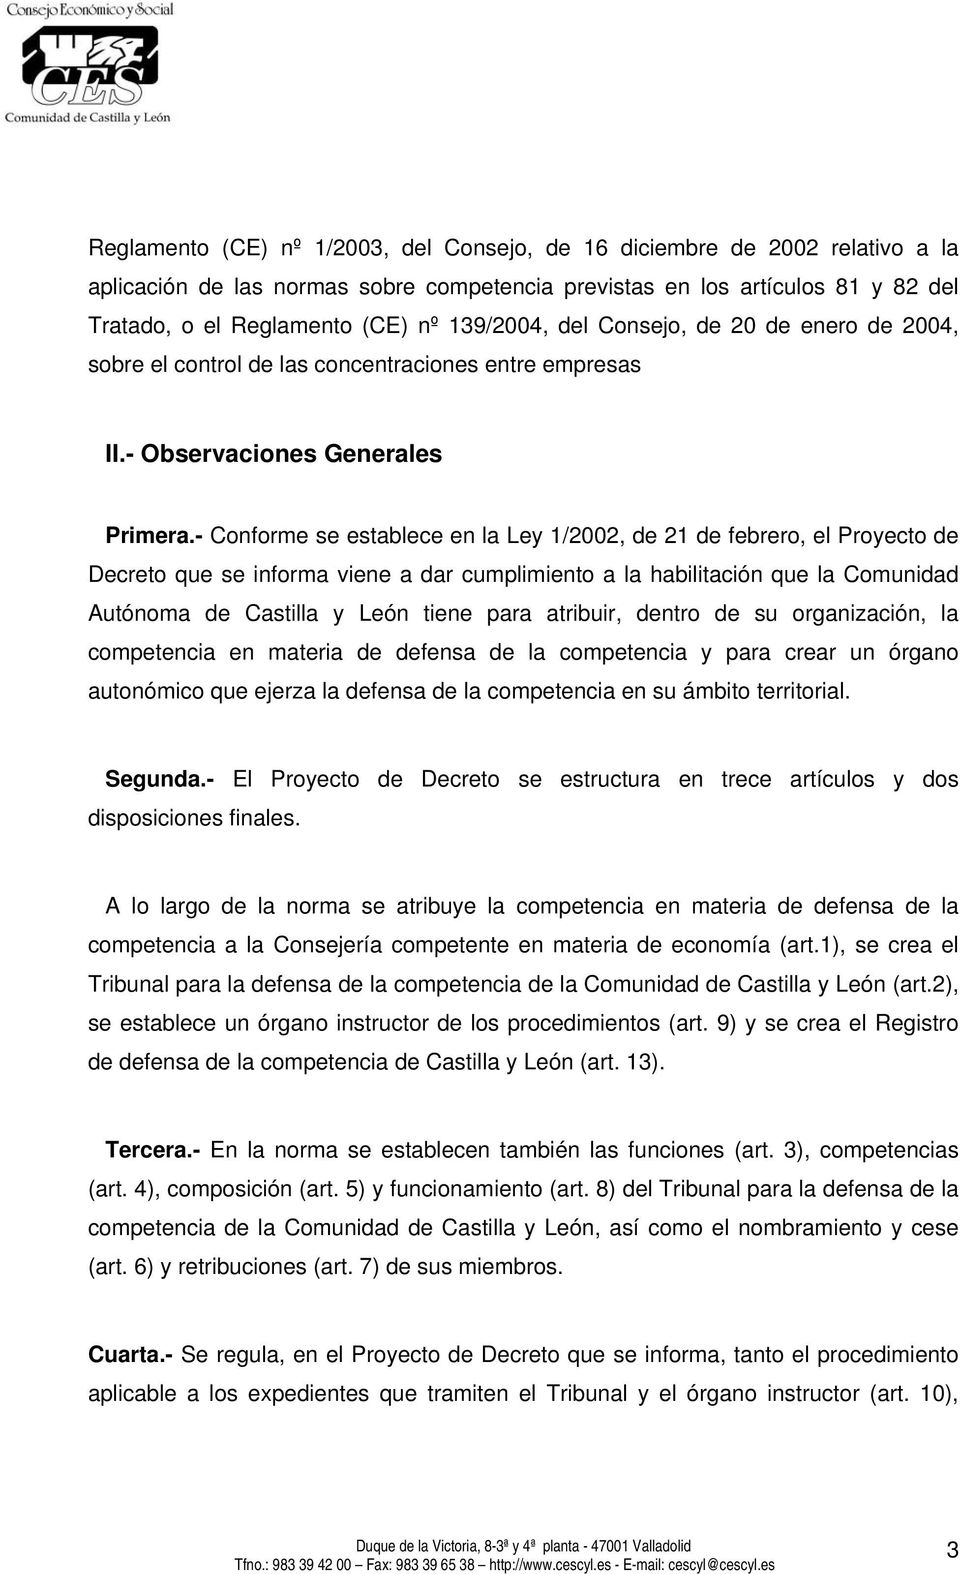 - Conforme se establece en la Ley 1/2002, de 21 de febrero, el Proyecto de Decreto que se informa viene a dar cumplimiento a la habilitación que la Comunidad Autónoma de Castilla y León tiene para